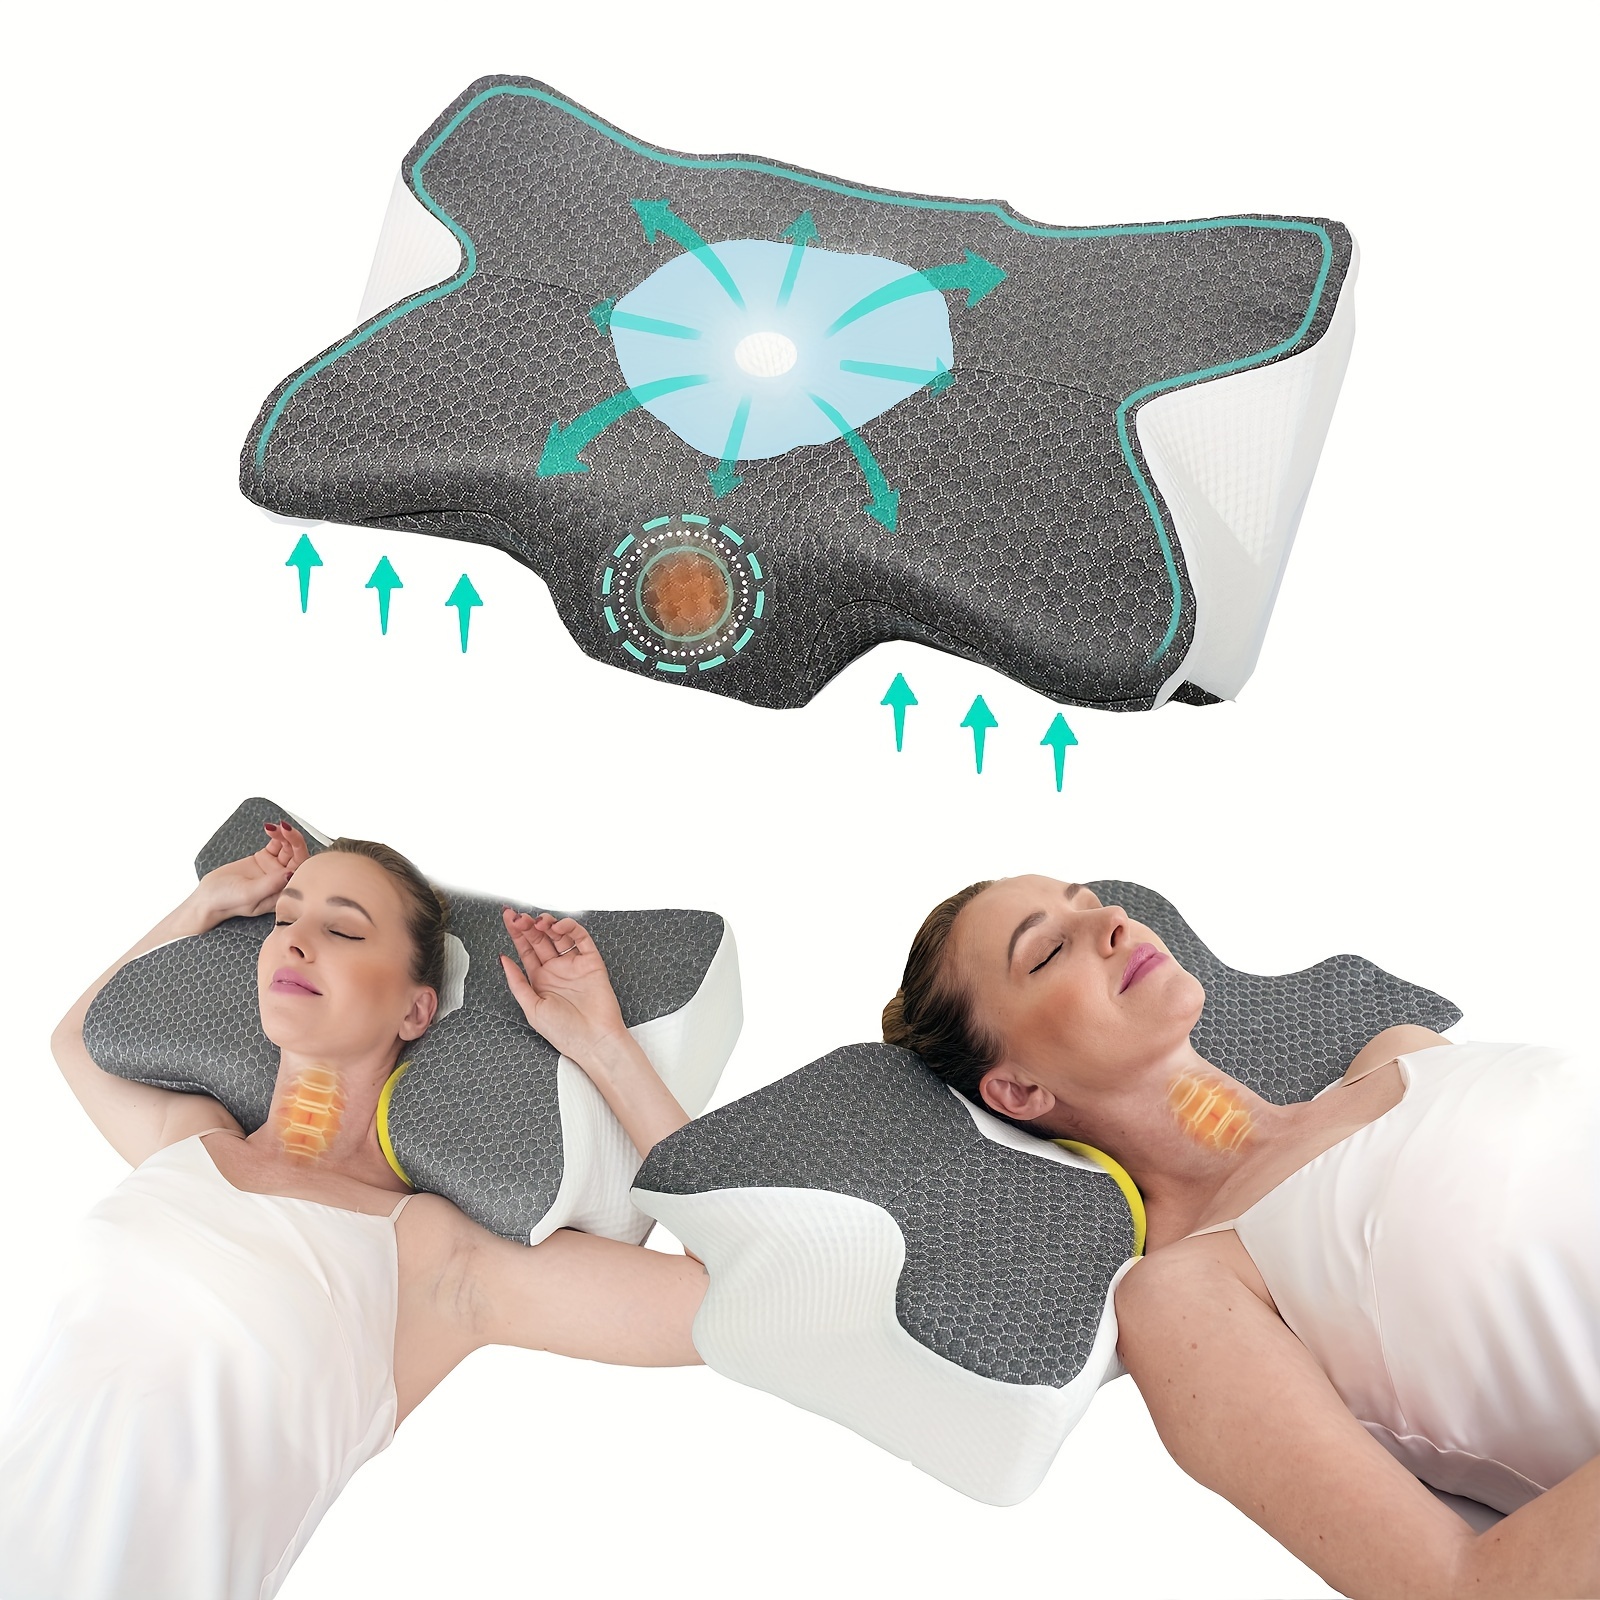 2 almohadas de forro polar lumbar de apoyo lumbar de 3 secciones, almohada  de apoyo lumbar para aliviar el dolor de espalda baja, cómoda almohada de